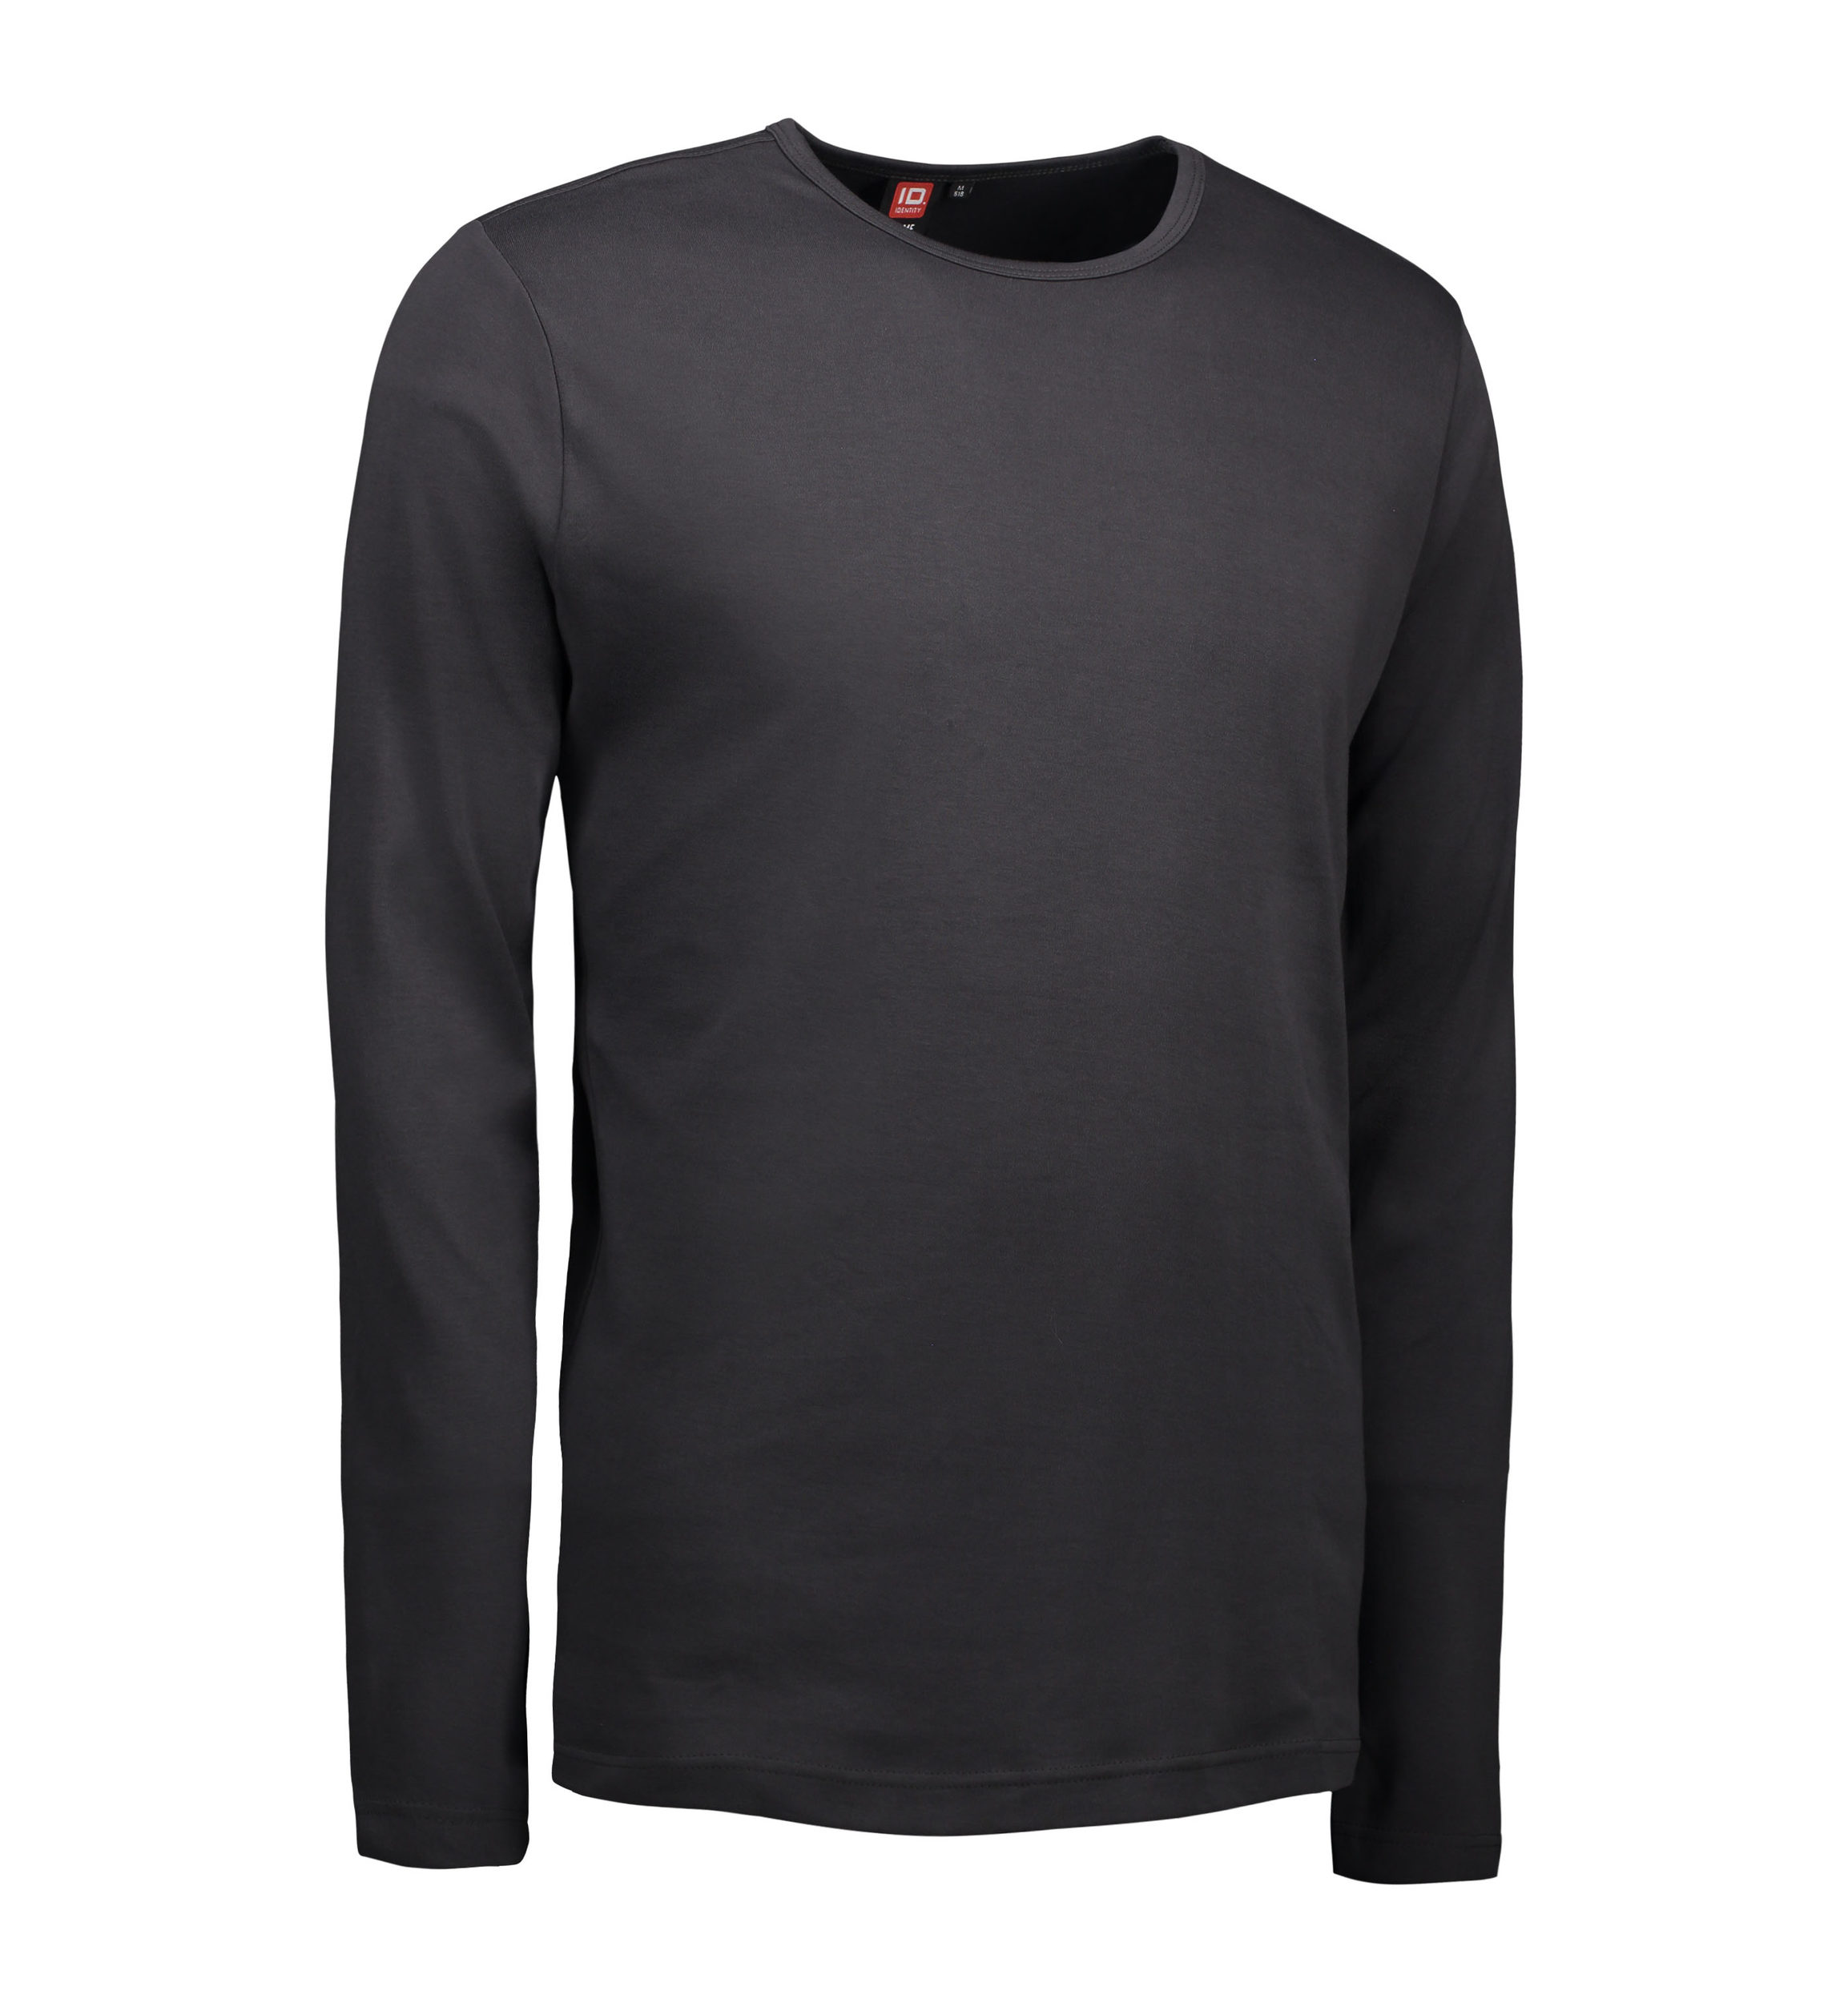 Se Koks grå langærmet t-shirt til mænd - S hos Sygeplejebutikken.dk